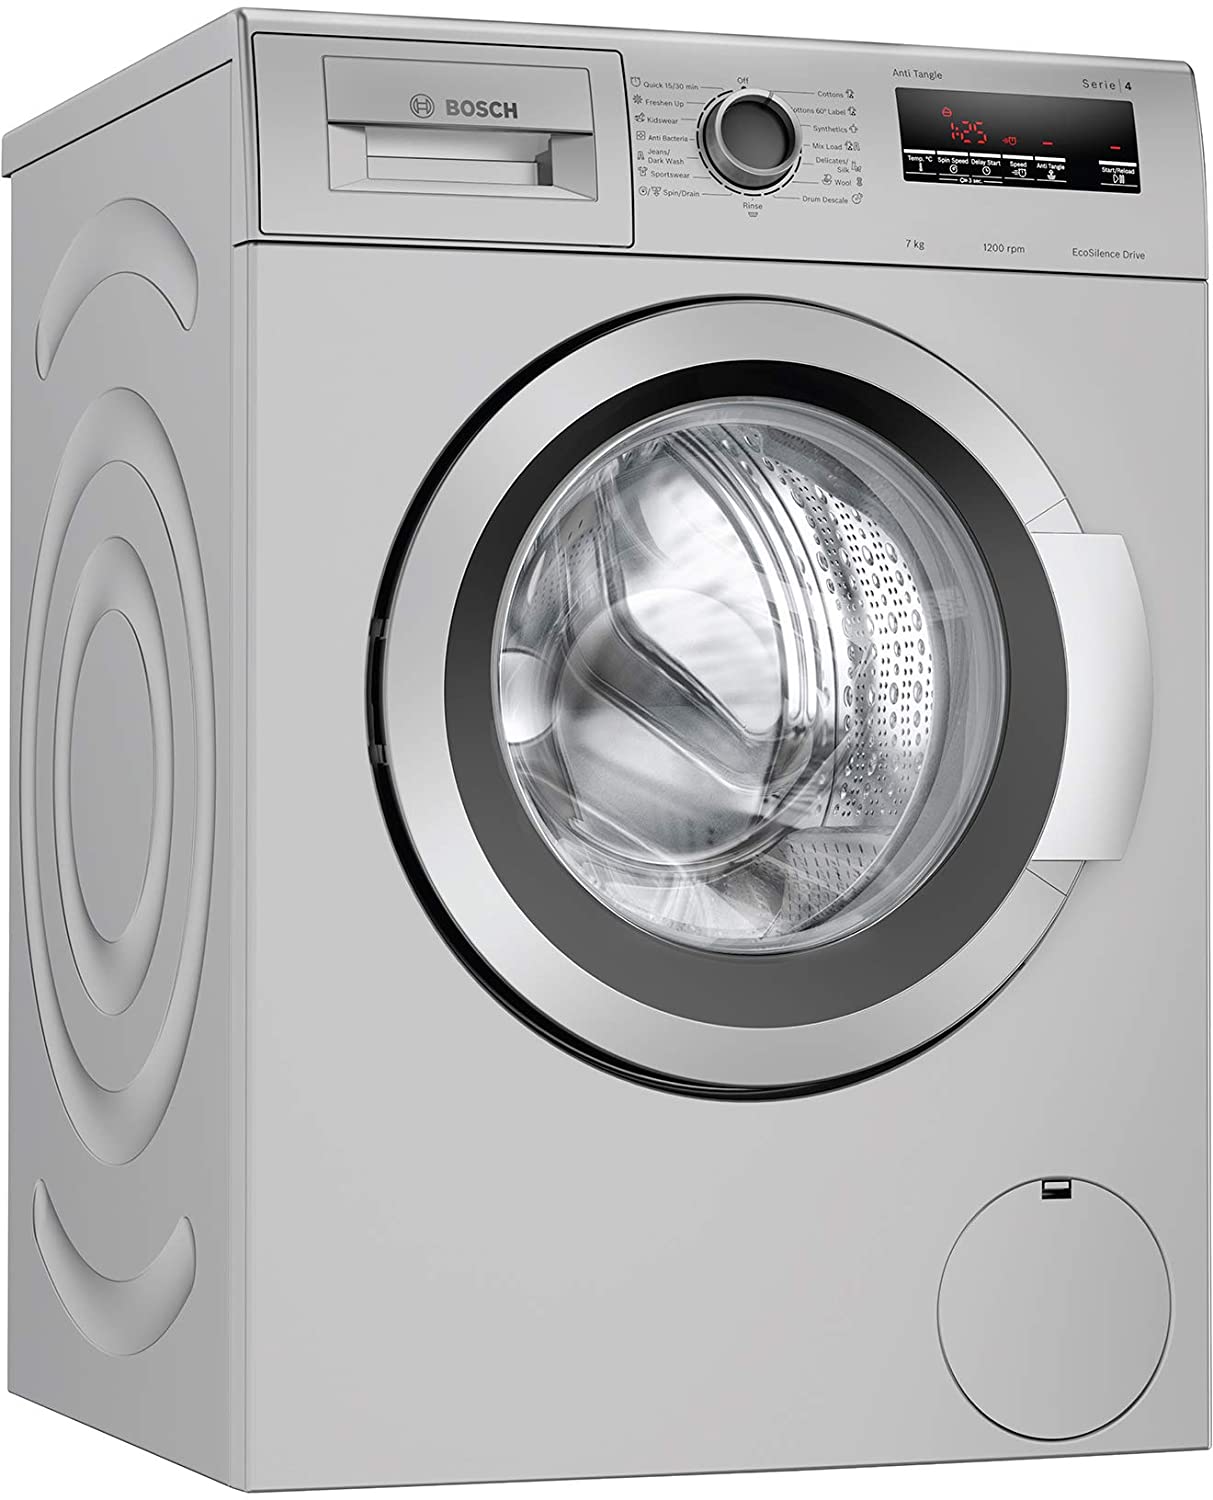 एमेजॉन बेस्ट वॉशिंग मशीन डील, 5 स्टार रेटिंग वाली इन बेस्ट ब्रांड फ्रंट लोड वॉशिंग मशीन पर मिल रहा है बंपर डिस्काउंट !